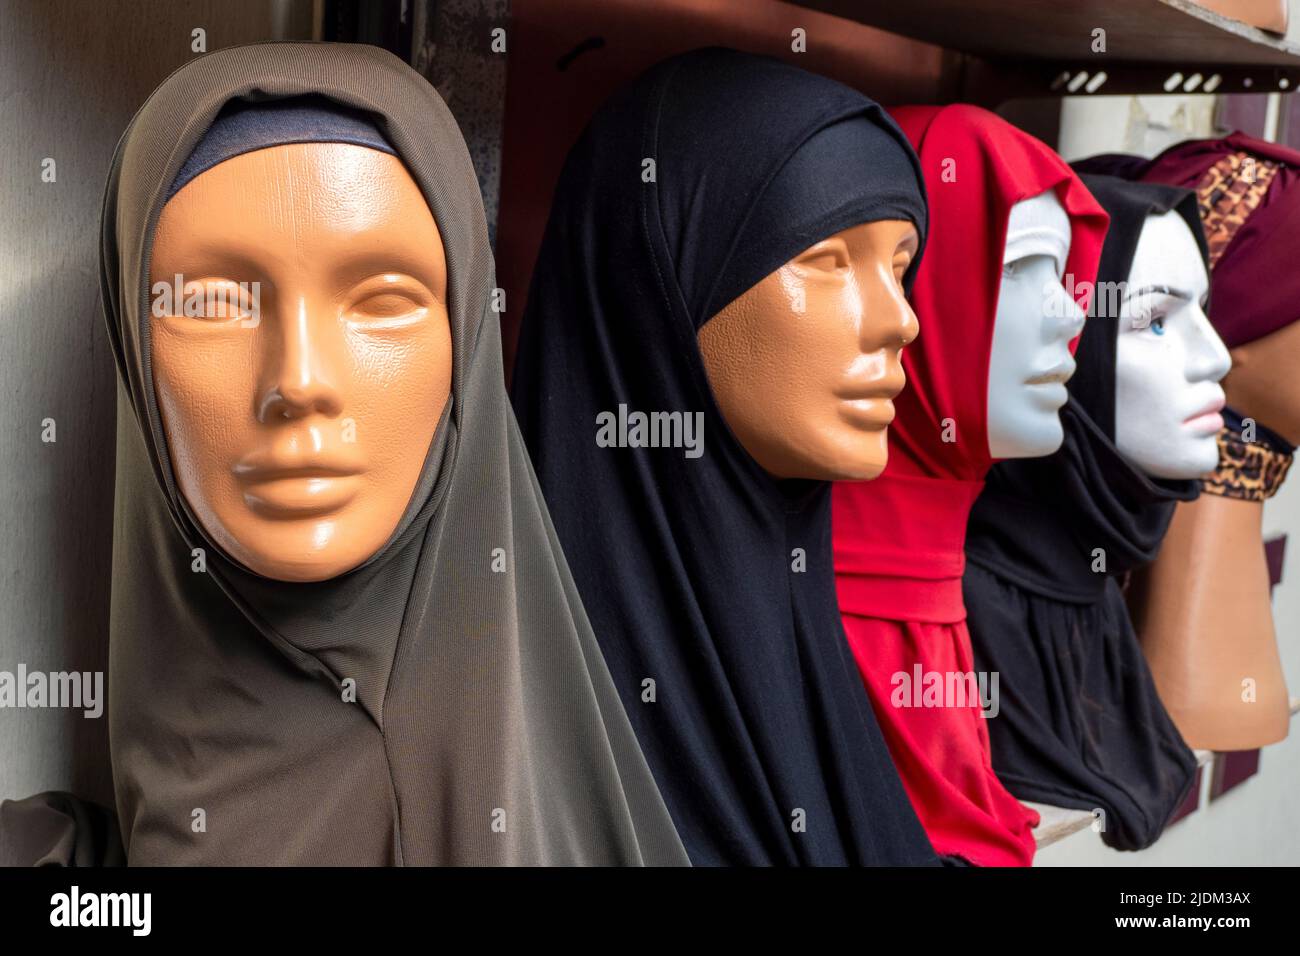 Les scarfs musulmans traditionnels connus sous le nom de mouchoir sur des mannequins en plastique sur un marché de rue en Turquie Banque D'Images